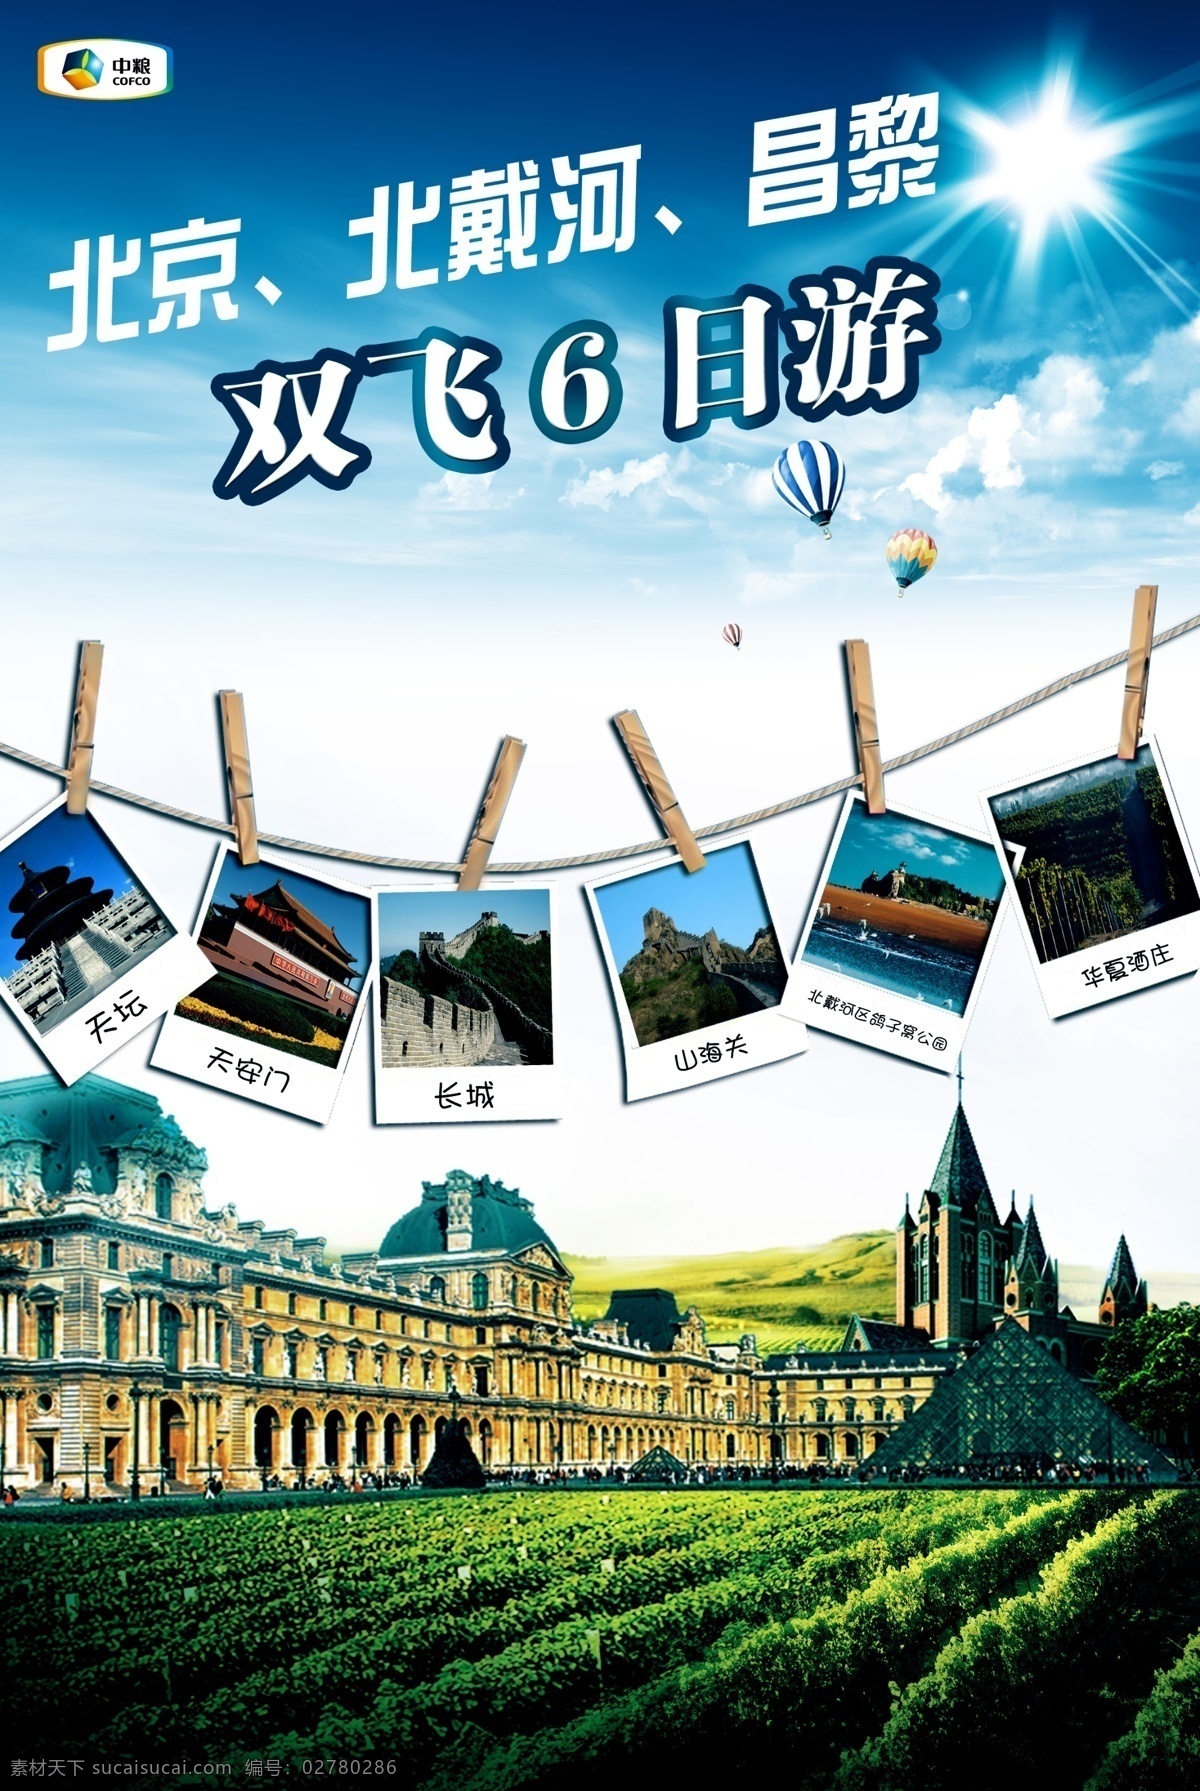 旅游海报 蓝天白云 风景 庄园 广告设计模板 源文件